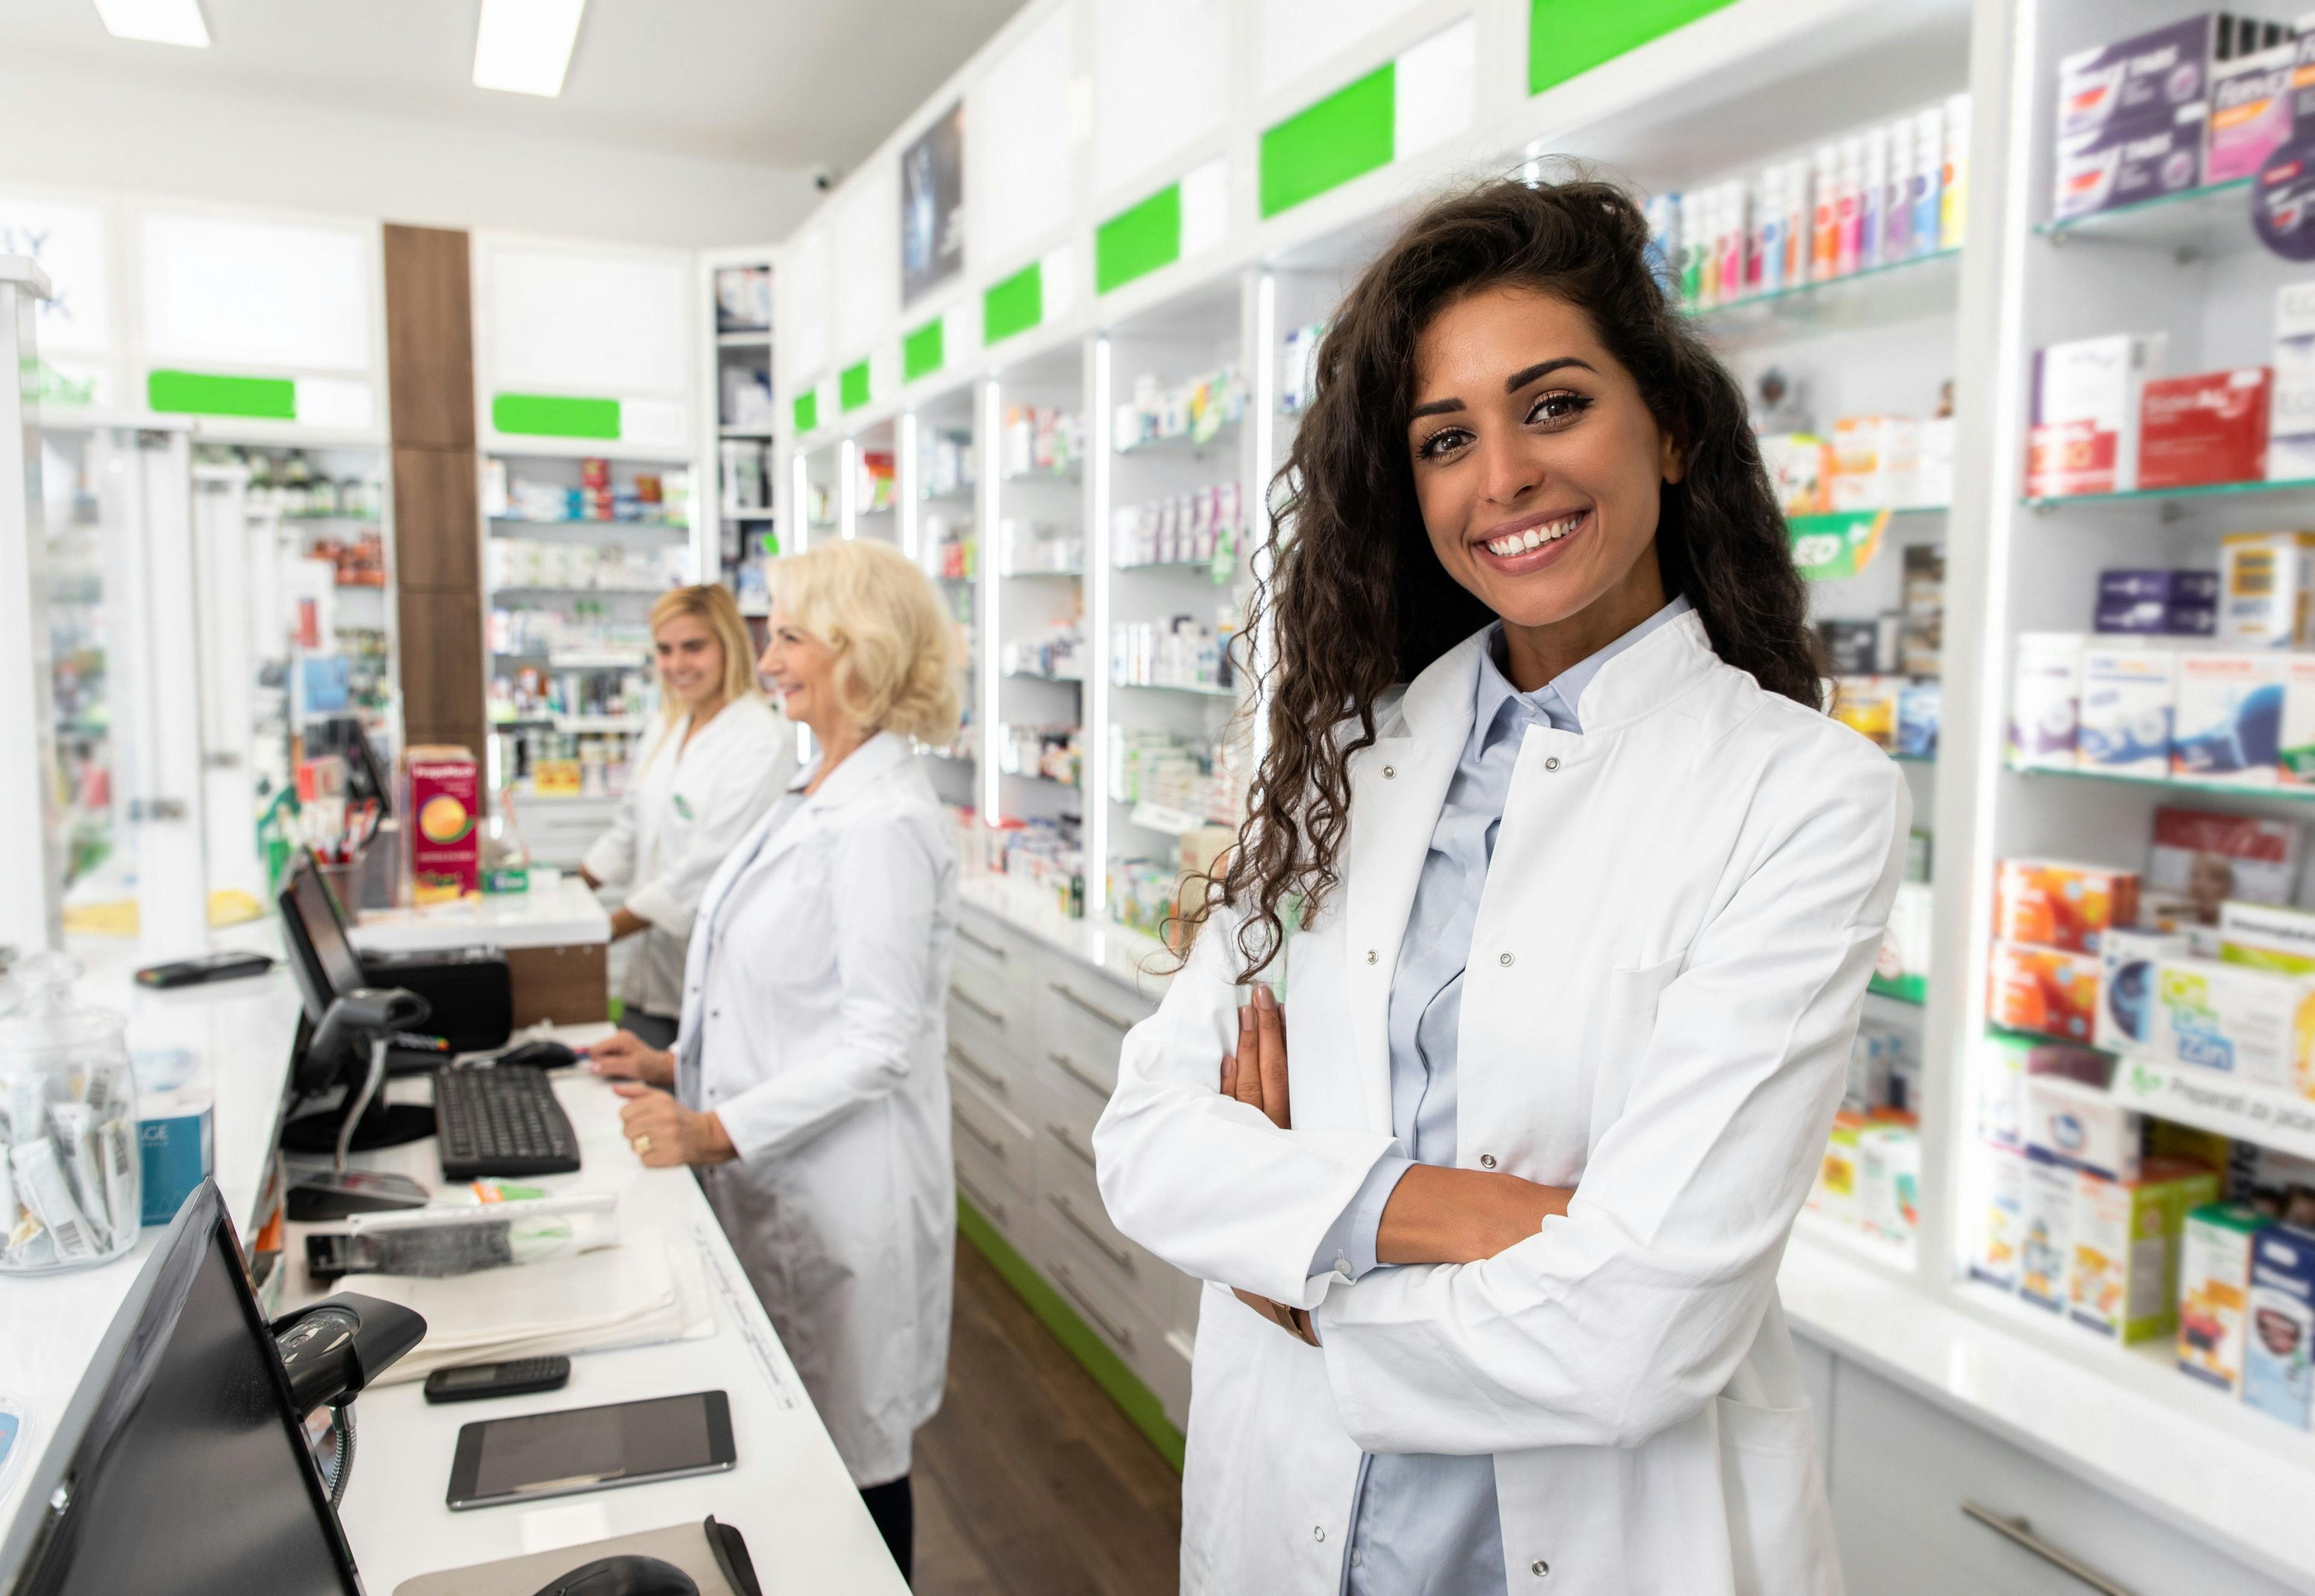 Portrait of female pharmacist in drugstore. | Image Credit: Zoran Zeremski - stock.adobe.com